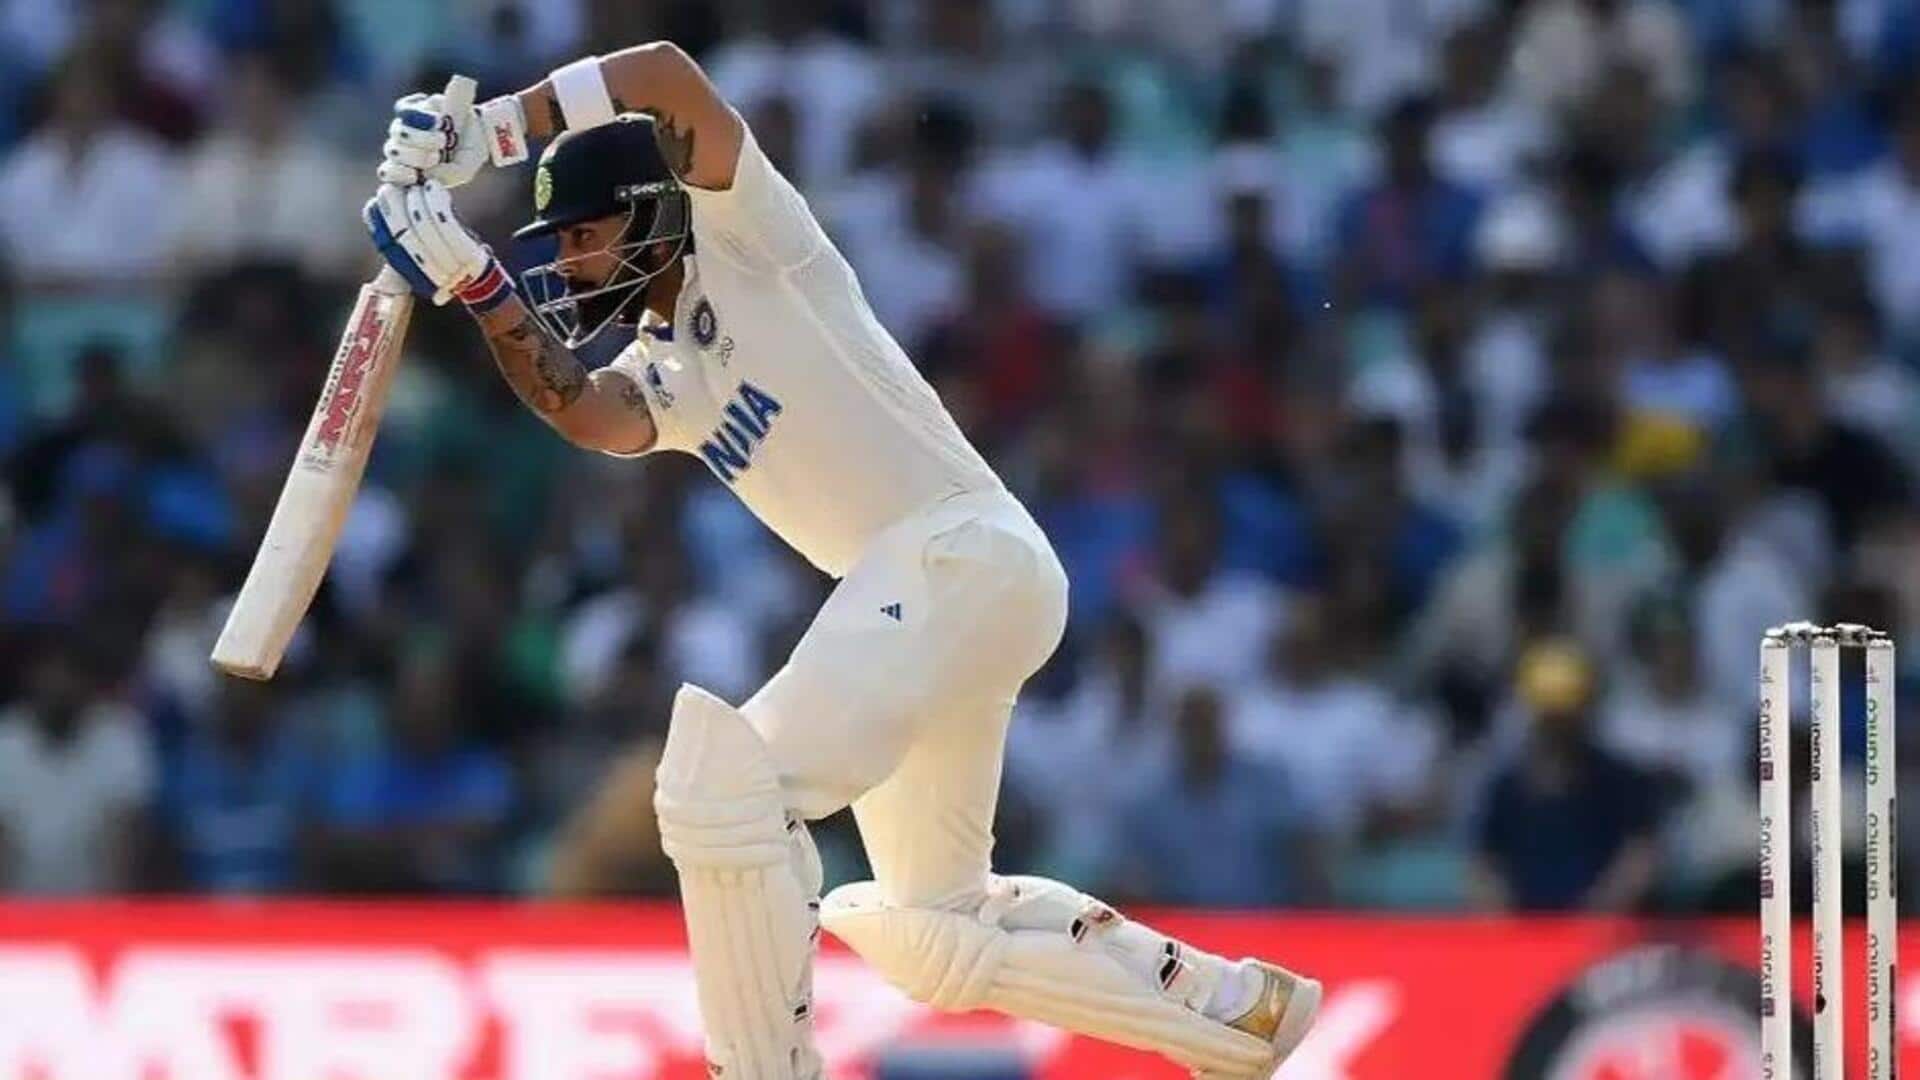 विराट कोहली दक्षिण अफ्रीका के खिलाफ बन सकते हैं दूसरे सर्वाधिक टेस्ट रन वाले भारतीय बल्लेबाज